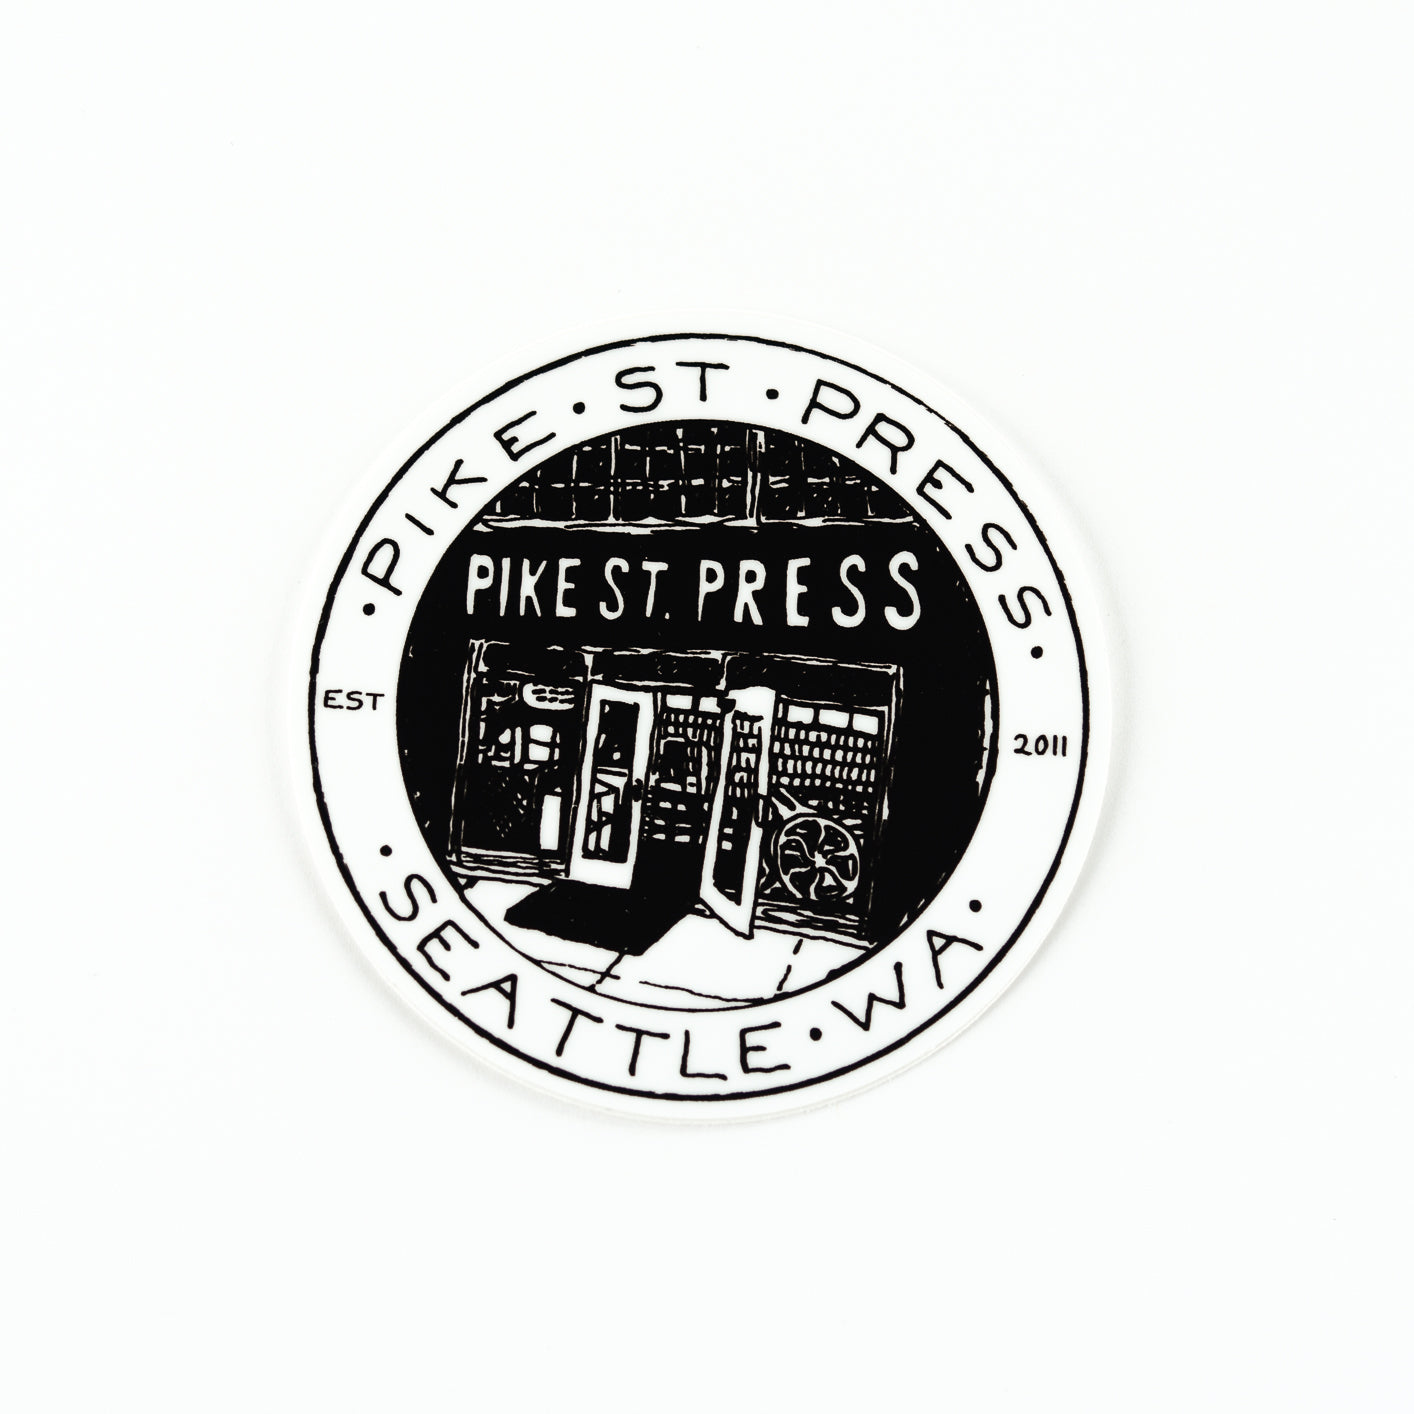 PSP Storefront Sticker, Seattle/ Northwest, Pike Street Press, Pike Street Press- Pike Street Press